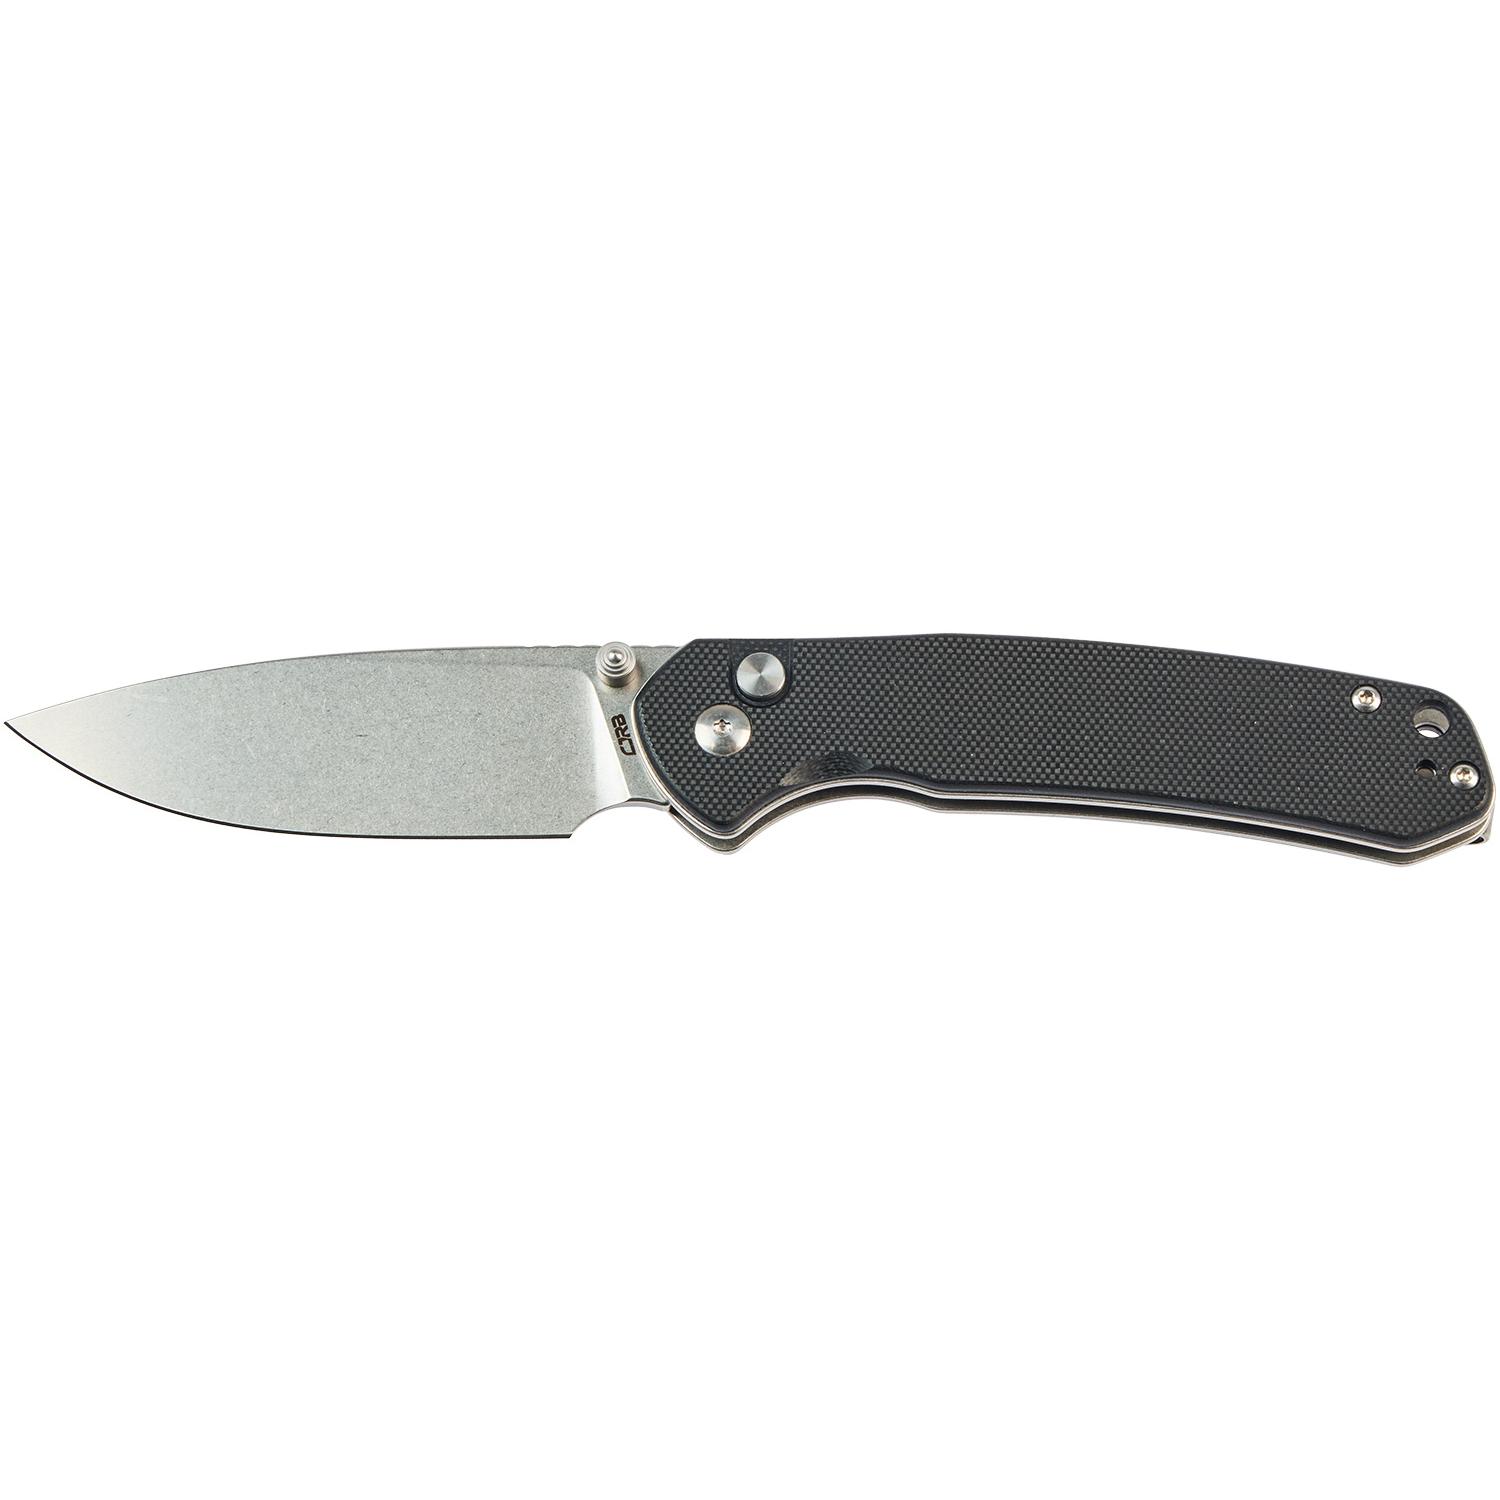 Нож CJRB Pyrite SW Black J1925-BK 2798.03.32